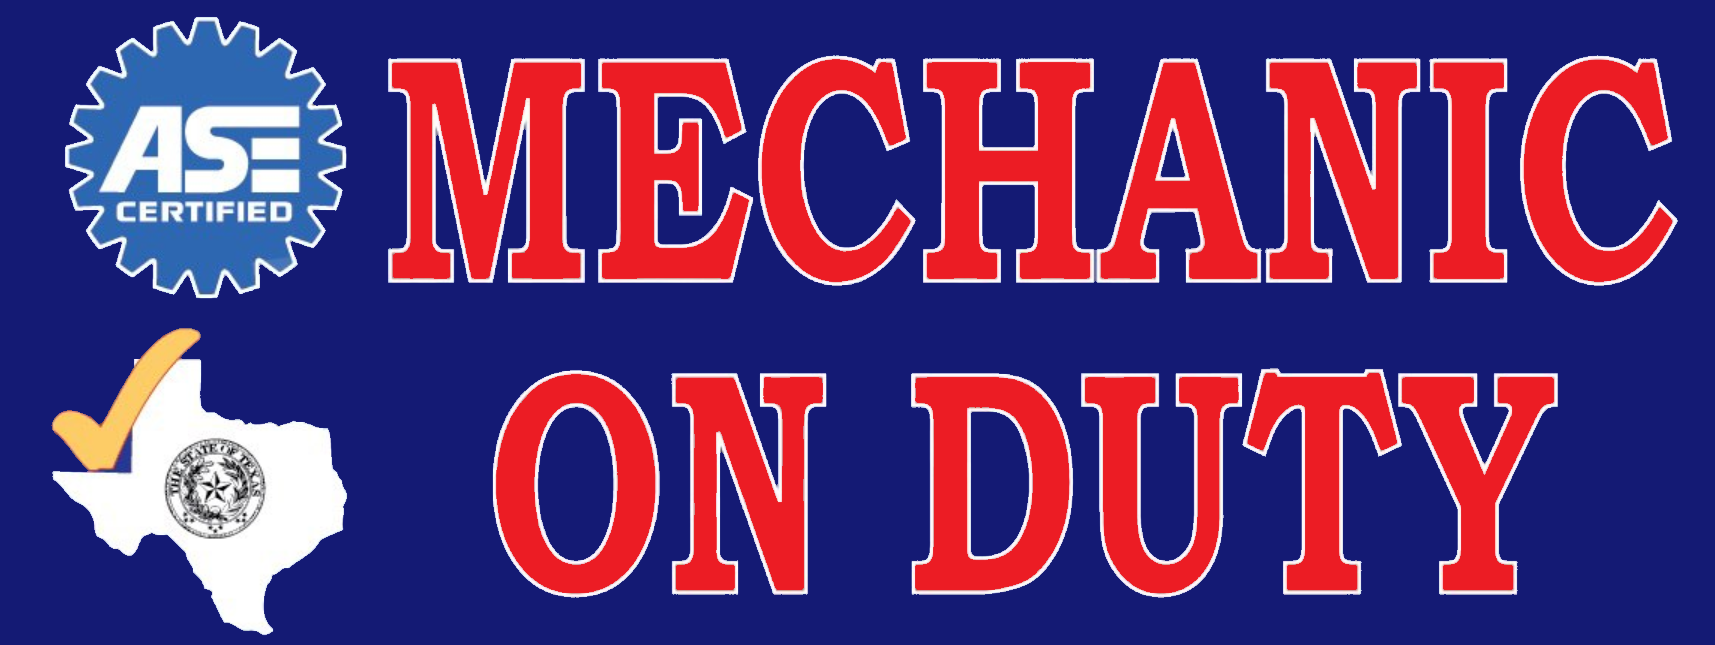 Texas - Mechanic On Duty | Vinyl Banner